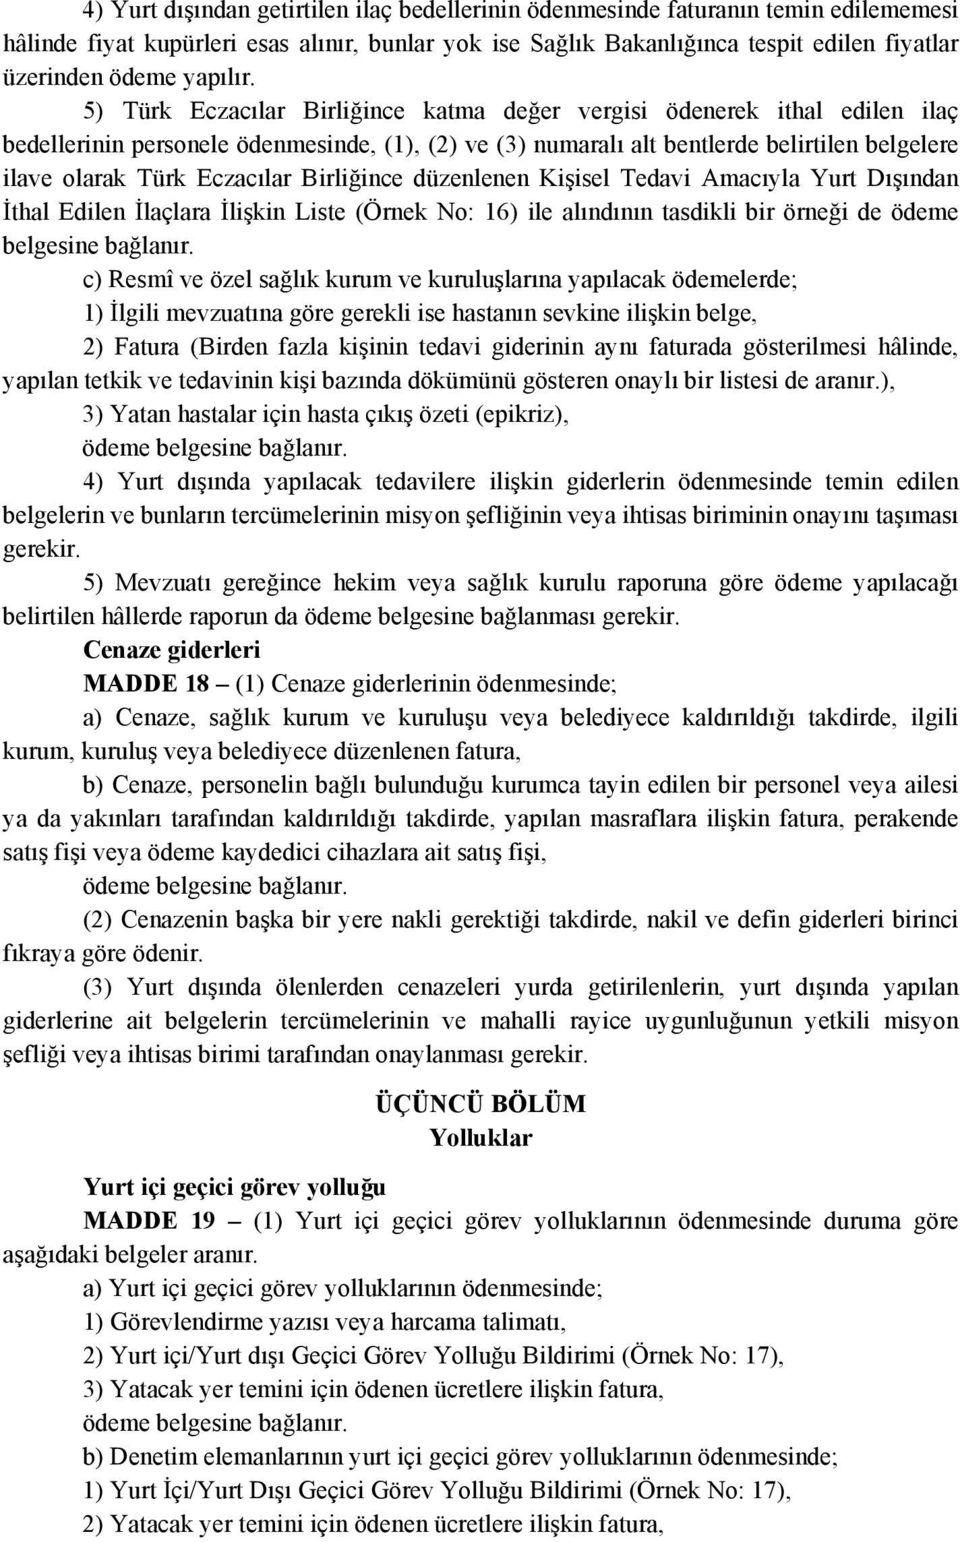 5) Türk Eczacılar Birliğince katma değer vergisi ödenerek ithal edilen ilaç bedellerinin personele ödenmesinde, (1), (2) ve (3) numaralı alt bentlerde belirtilen belgelere ilave olarak Türk Eczacılar